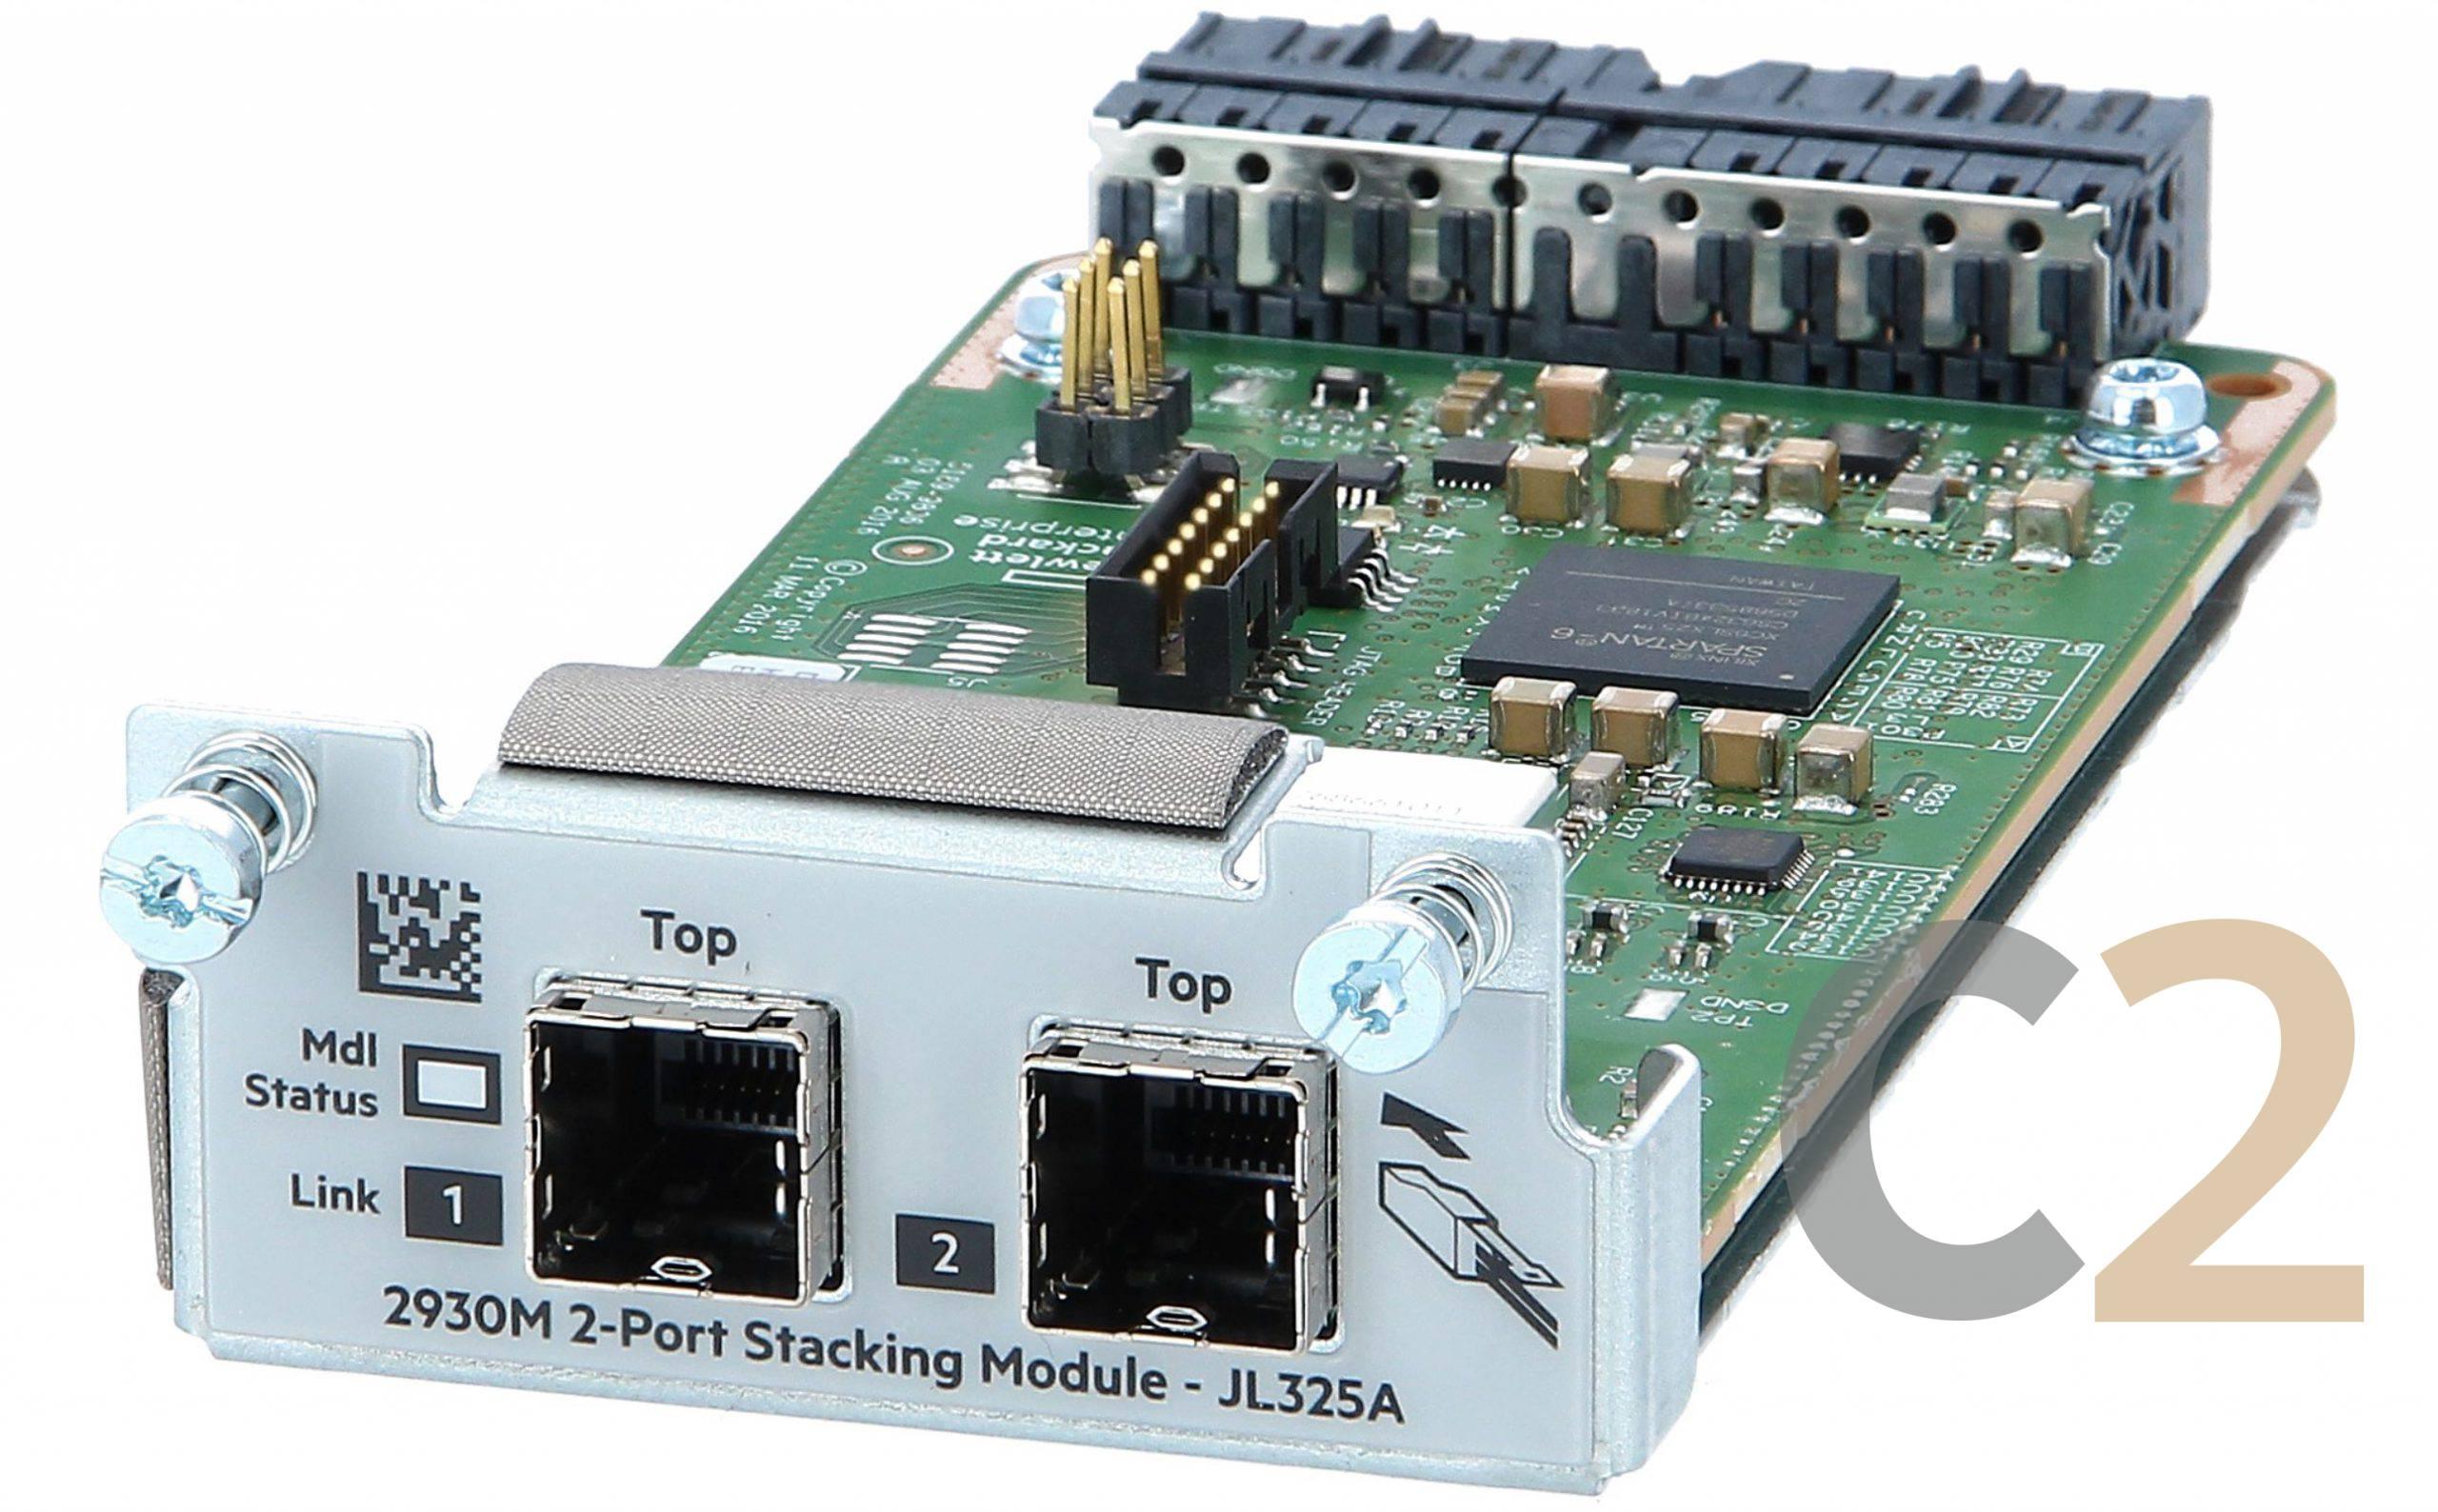 (水貨) ARUBA JL325A 2930 2-port Stacking Module 全新交換機 100% NEW - C2 Computer